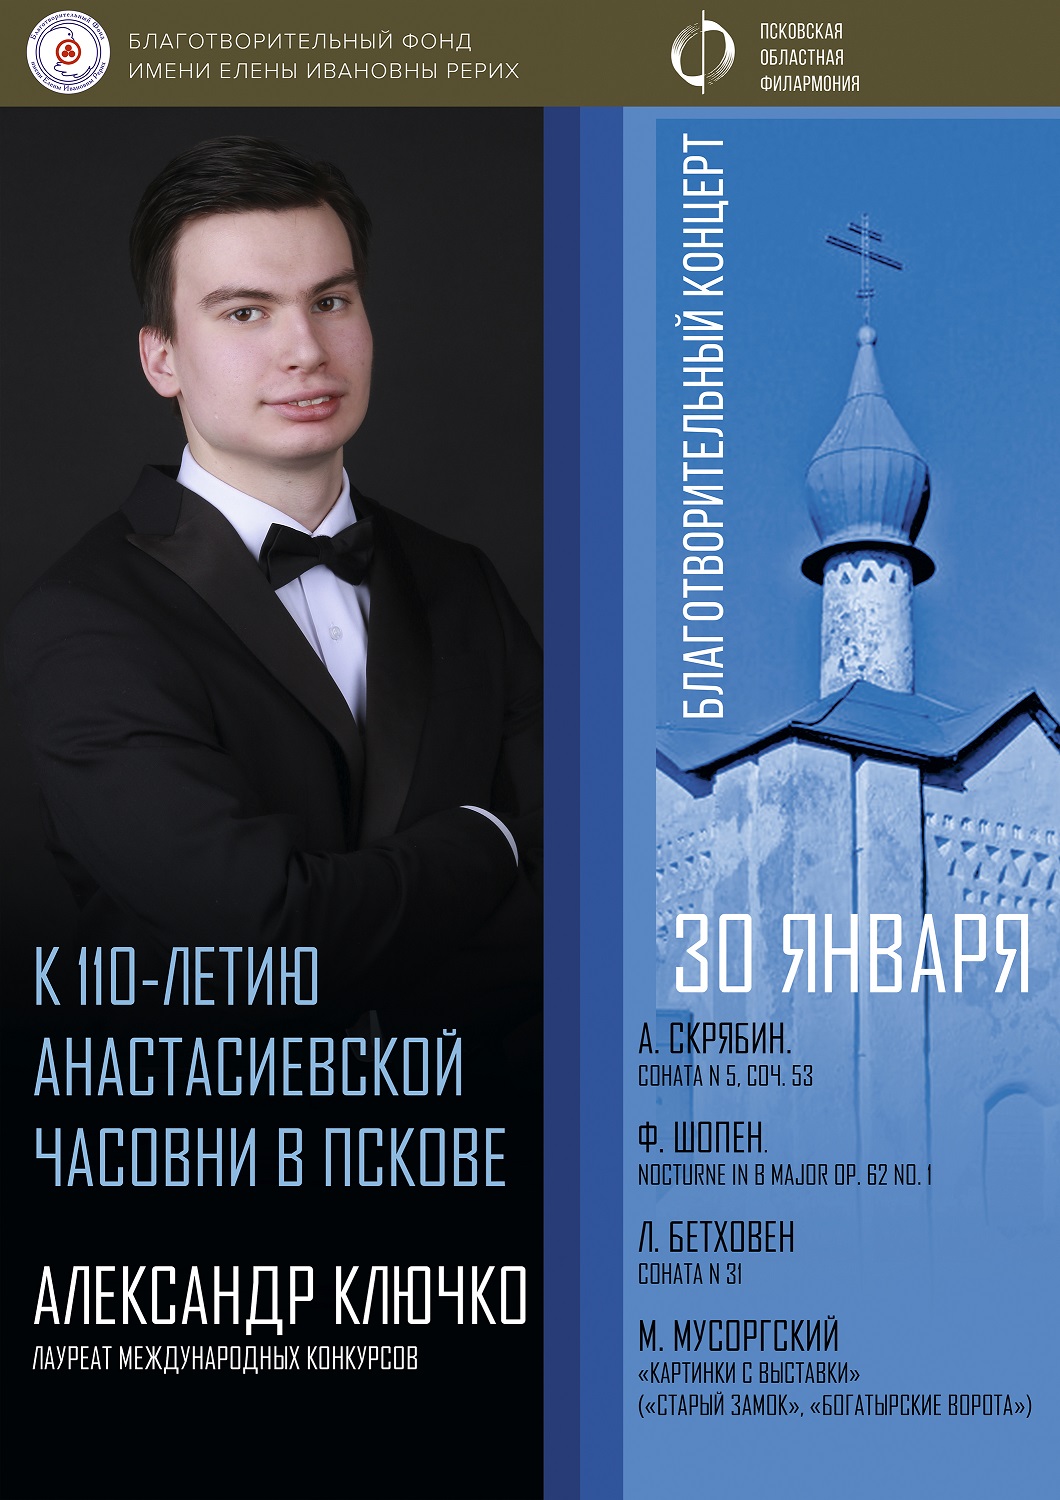 Александр Ключко. Благотворительный концерт